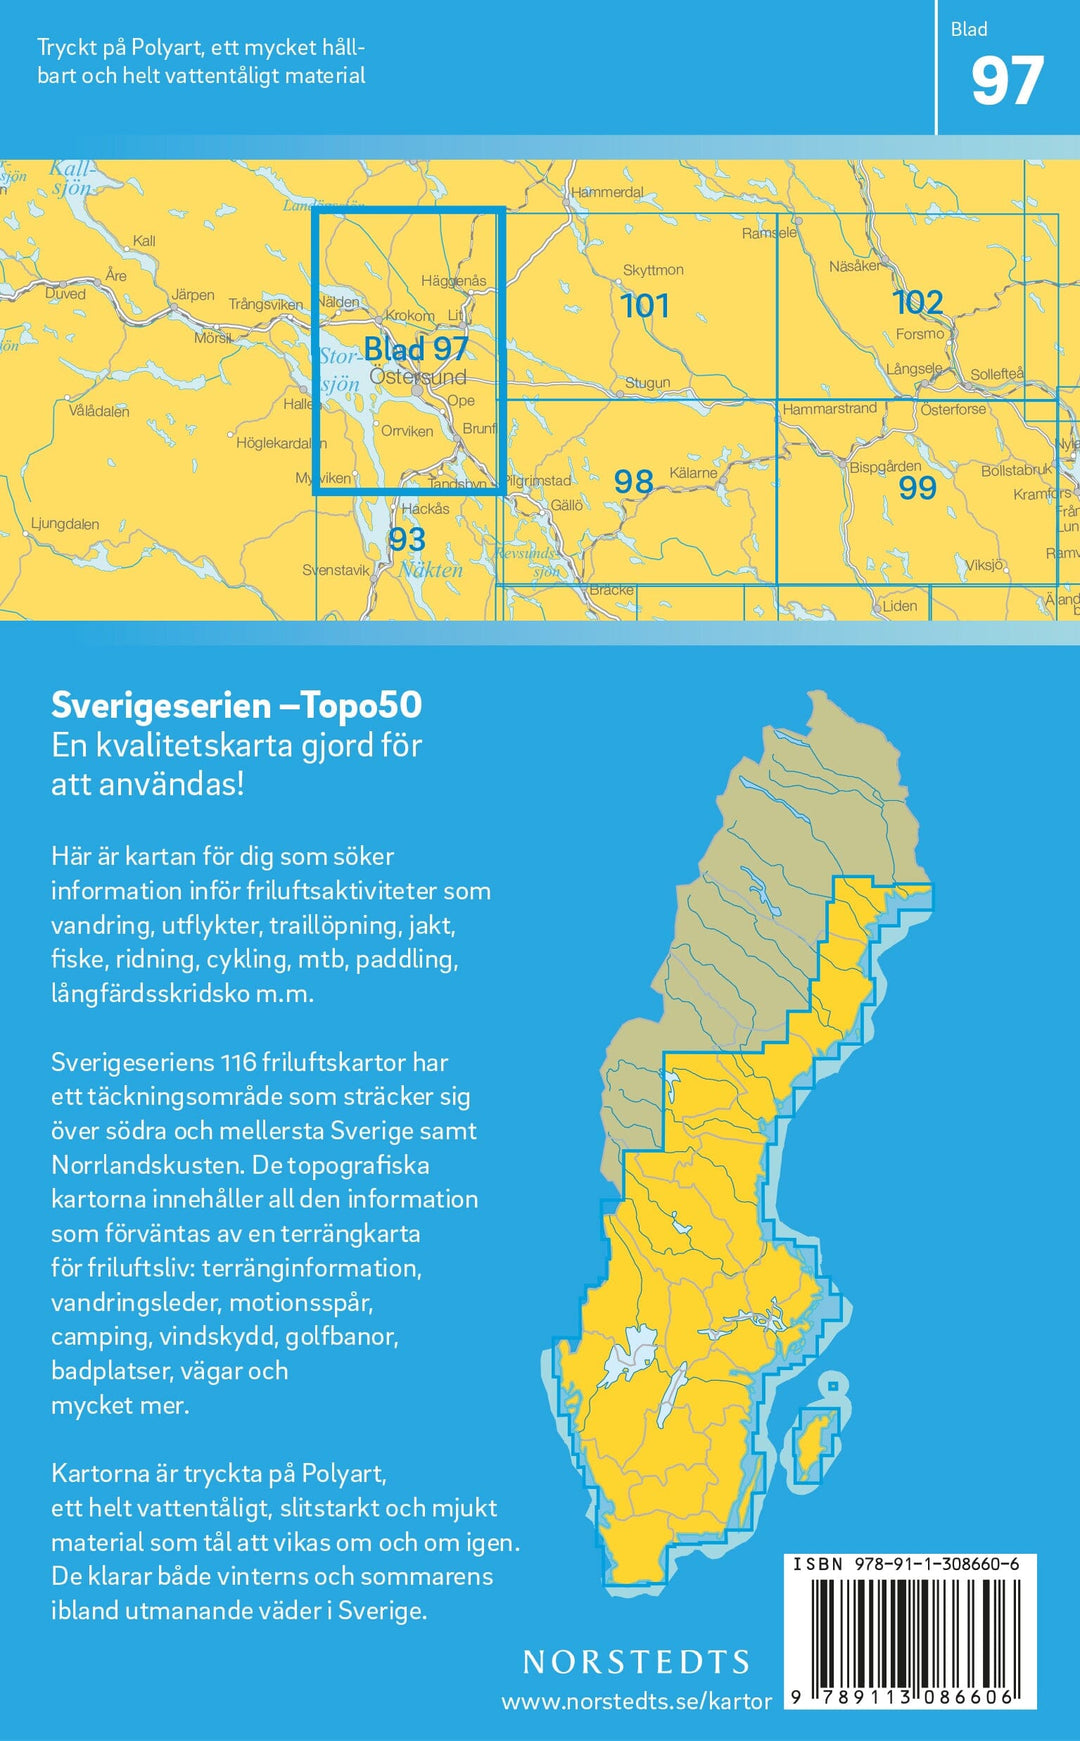 Carte topographique n° 97 - Östersund (Suède) | Norstedts - Sverigeserien carte pliée Norstedts 